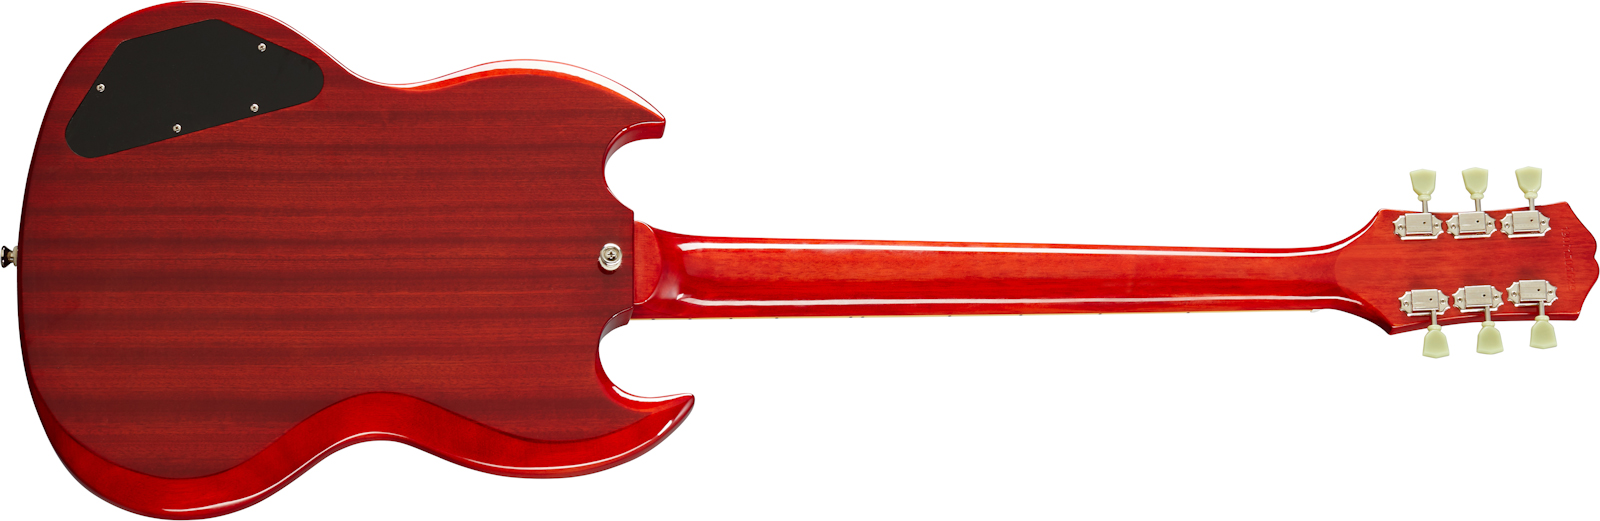 Epiphone Sg Standard 1961 2h Ht Lau - Vintage Cherry - Guitarra eléctrica de doble corte. - Variation 1